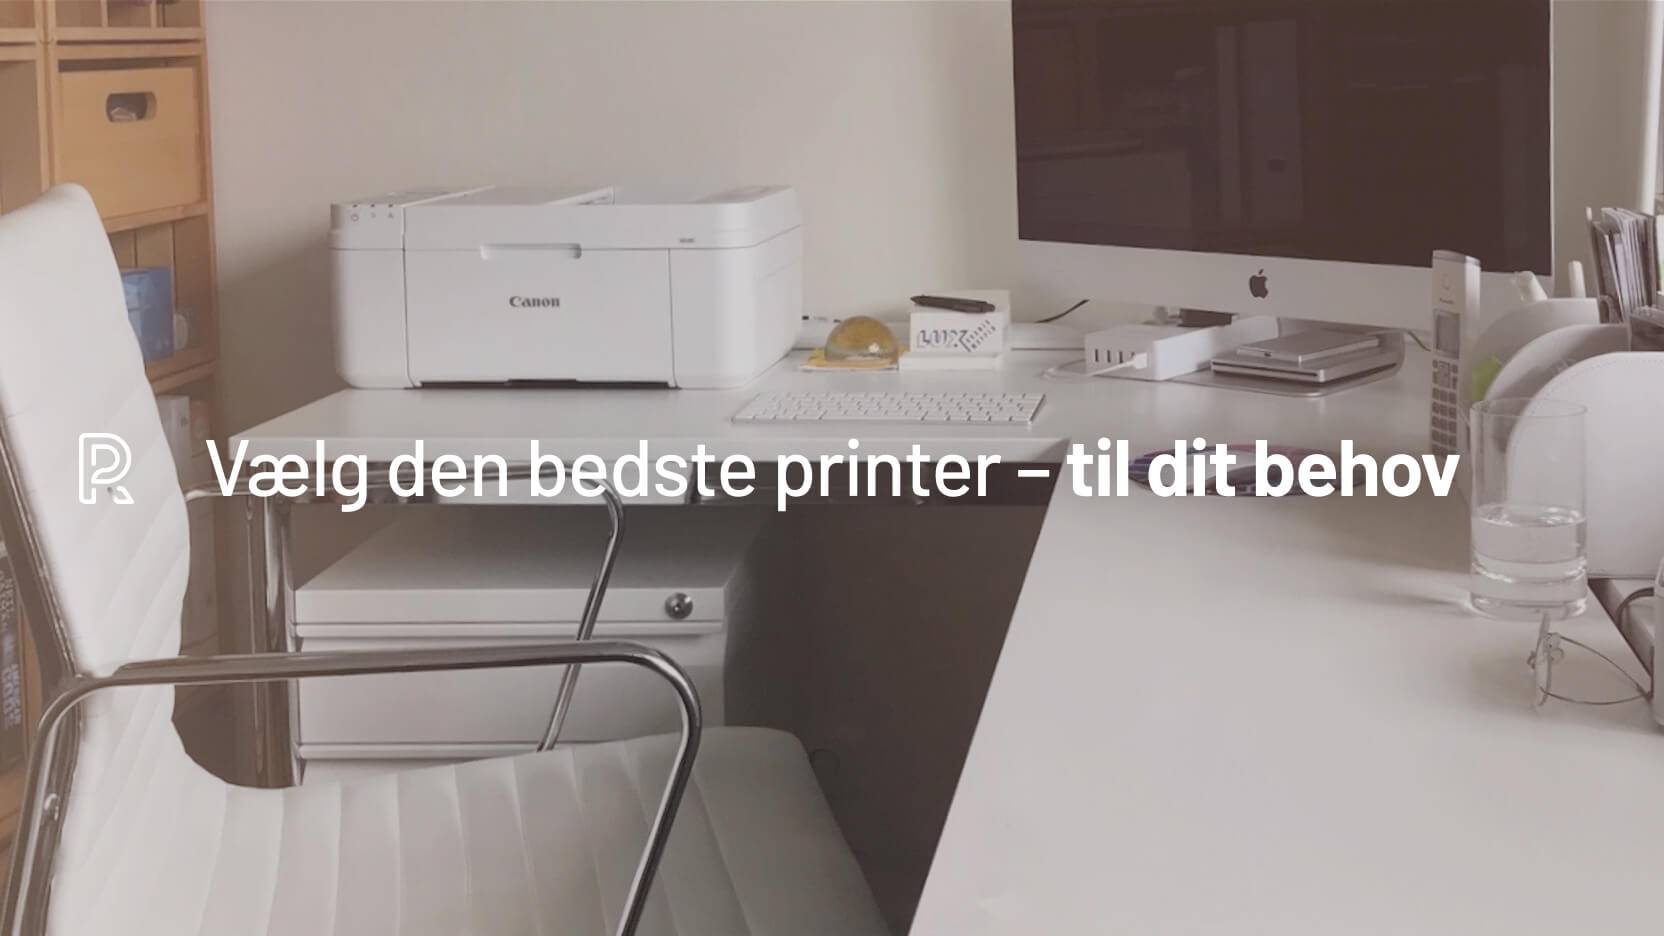 Vælg den bedste printer